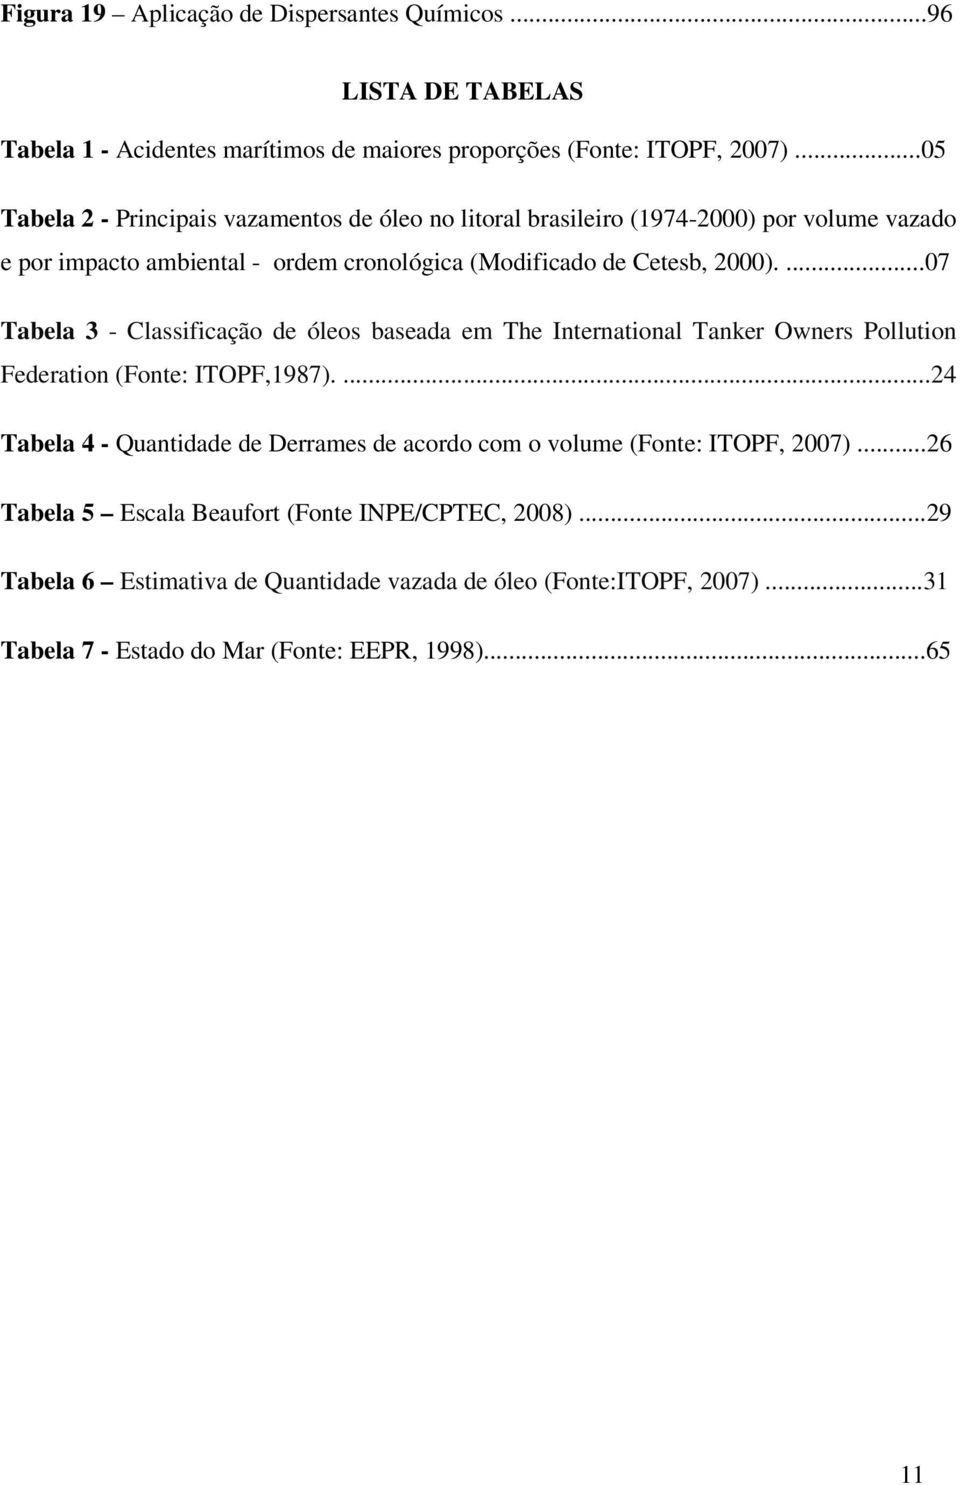 ...07 Tabela 3 - Classificação de óleos baseada em The International Tanker Owners Pollution Federation (Fonte: ITOPF,1987).